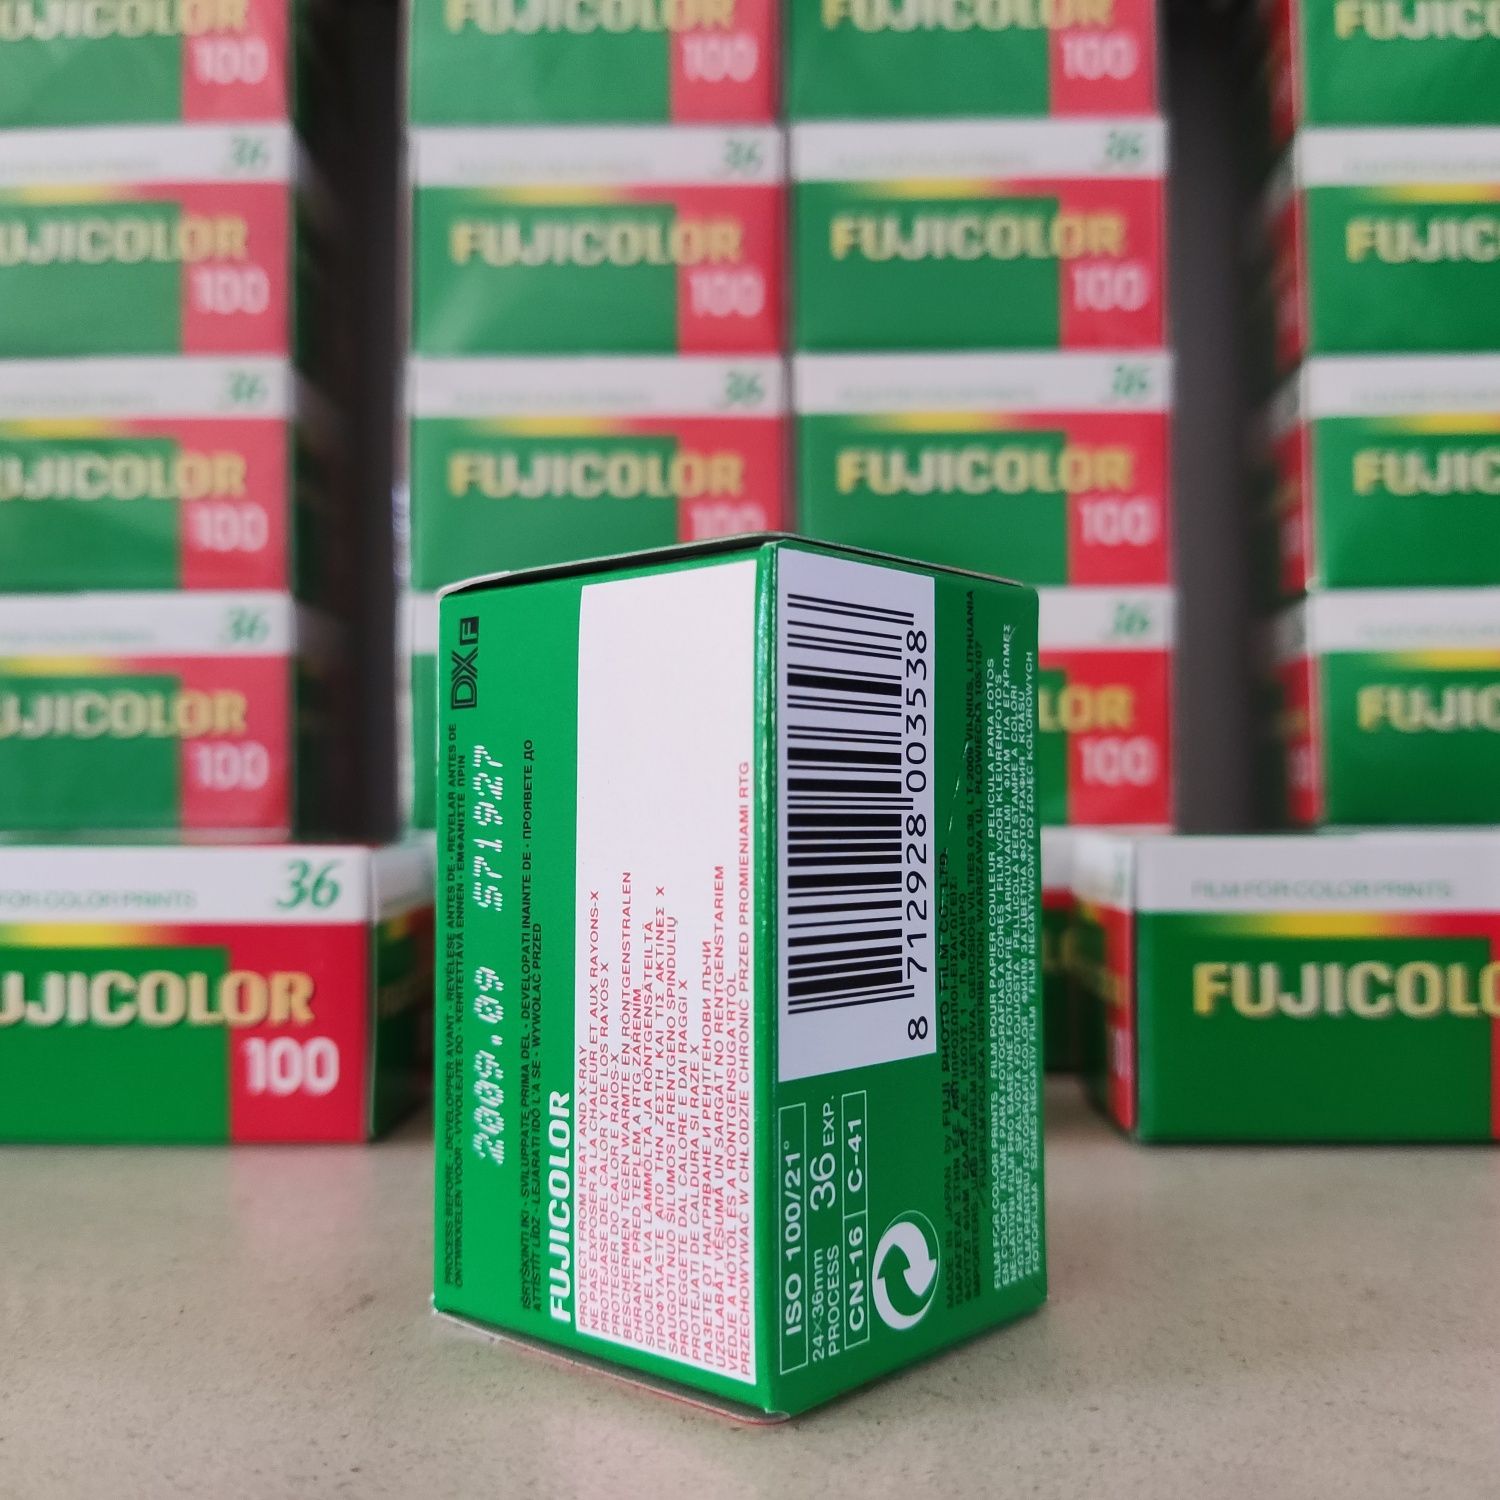 Fujifilm Fujicolor ISO 100 - 36 exp. - caixa